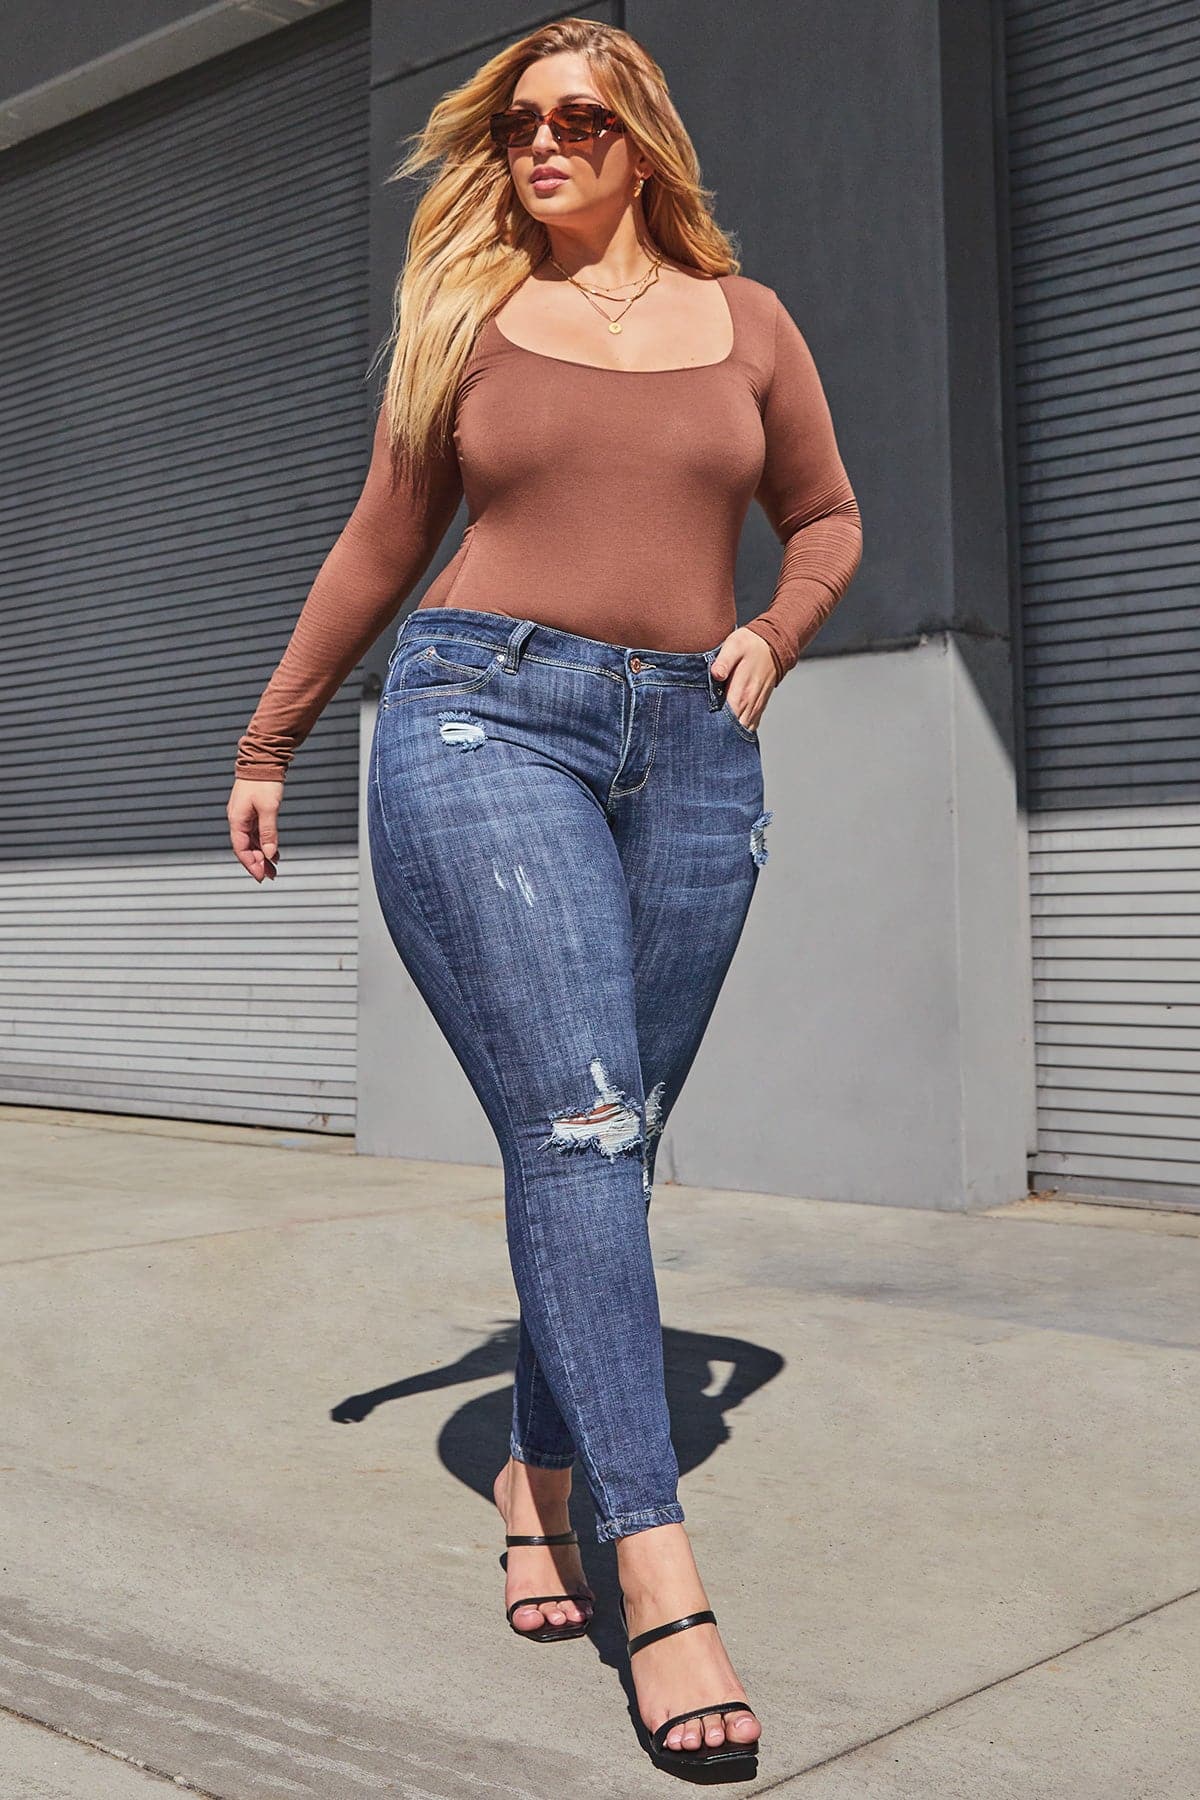 Plus Size Women's WannaBettaButt Skinny Jeans